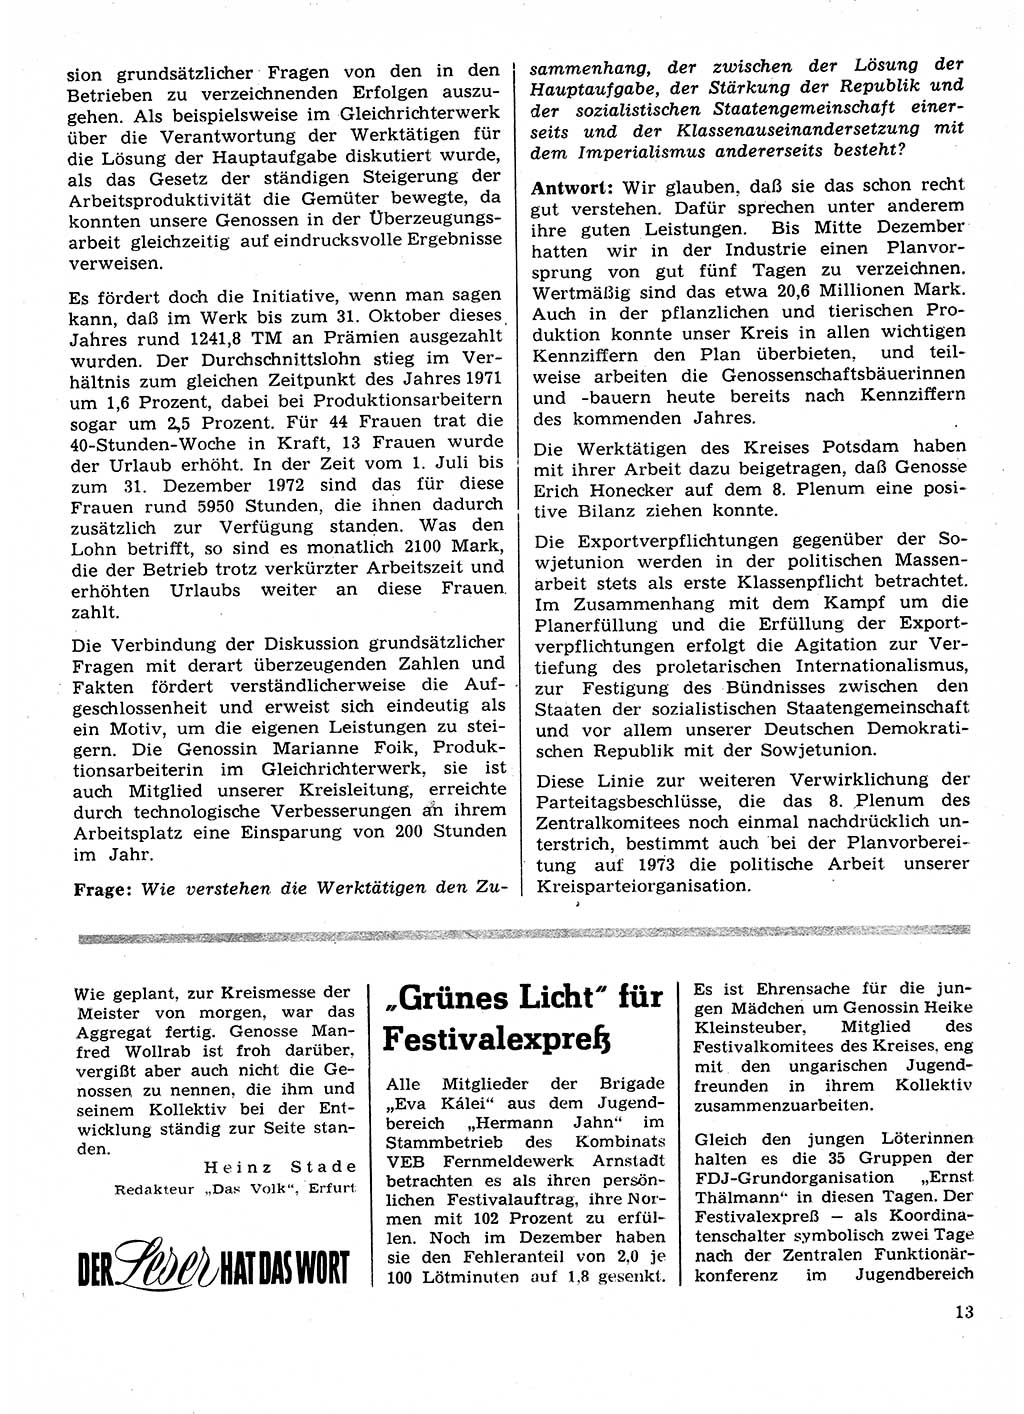 Neuer Weg (NW), Organ des Zentralkomitees (ZK) der SED (Sozialistische Einheitspartei Deutschlands) für Fragen des Parteilebens, 28. Jahrgang [Deutsche Demokratische Republik (DDR)] 1973, Seite 13 (NW ZK SED DDR 1973, S. 13)